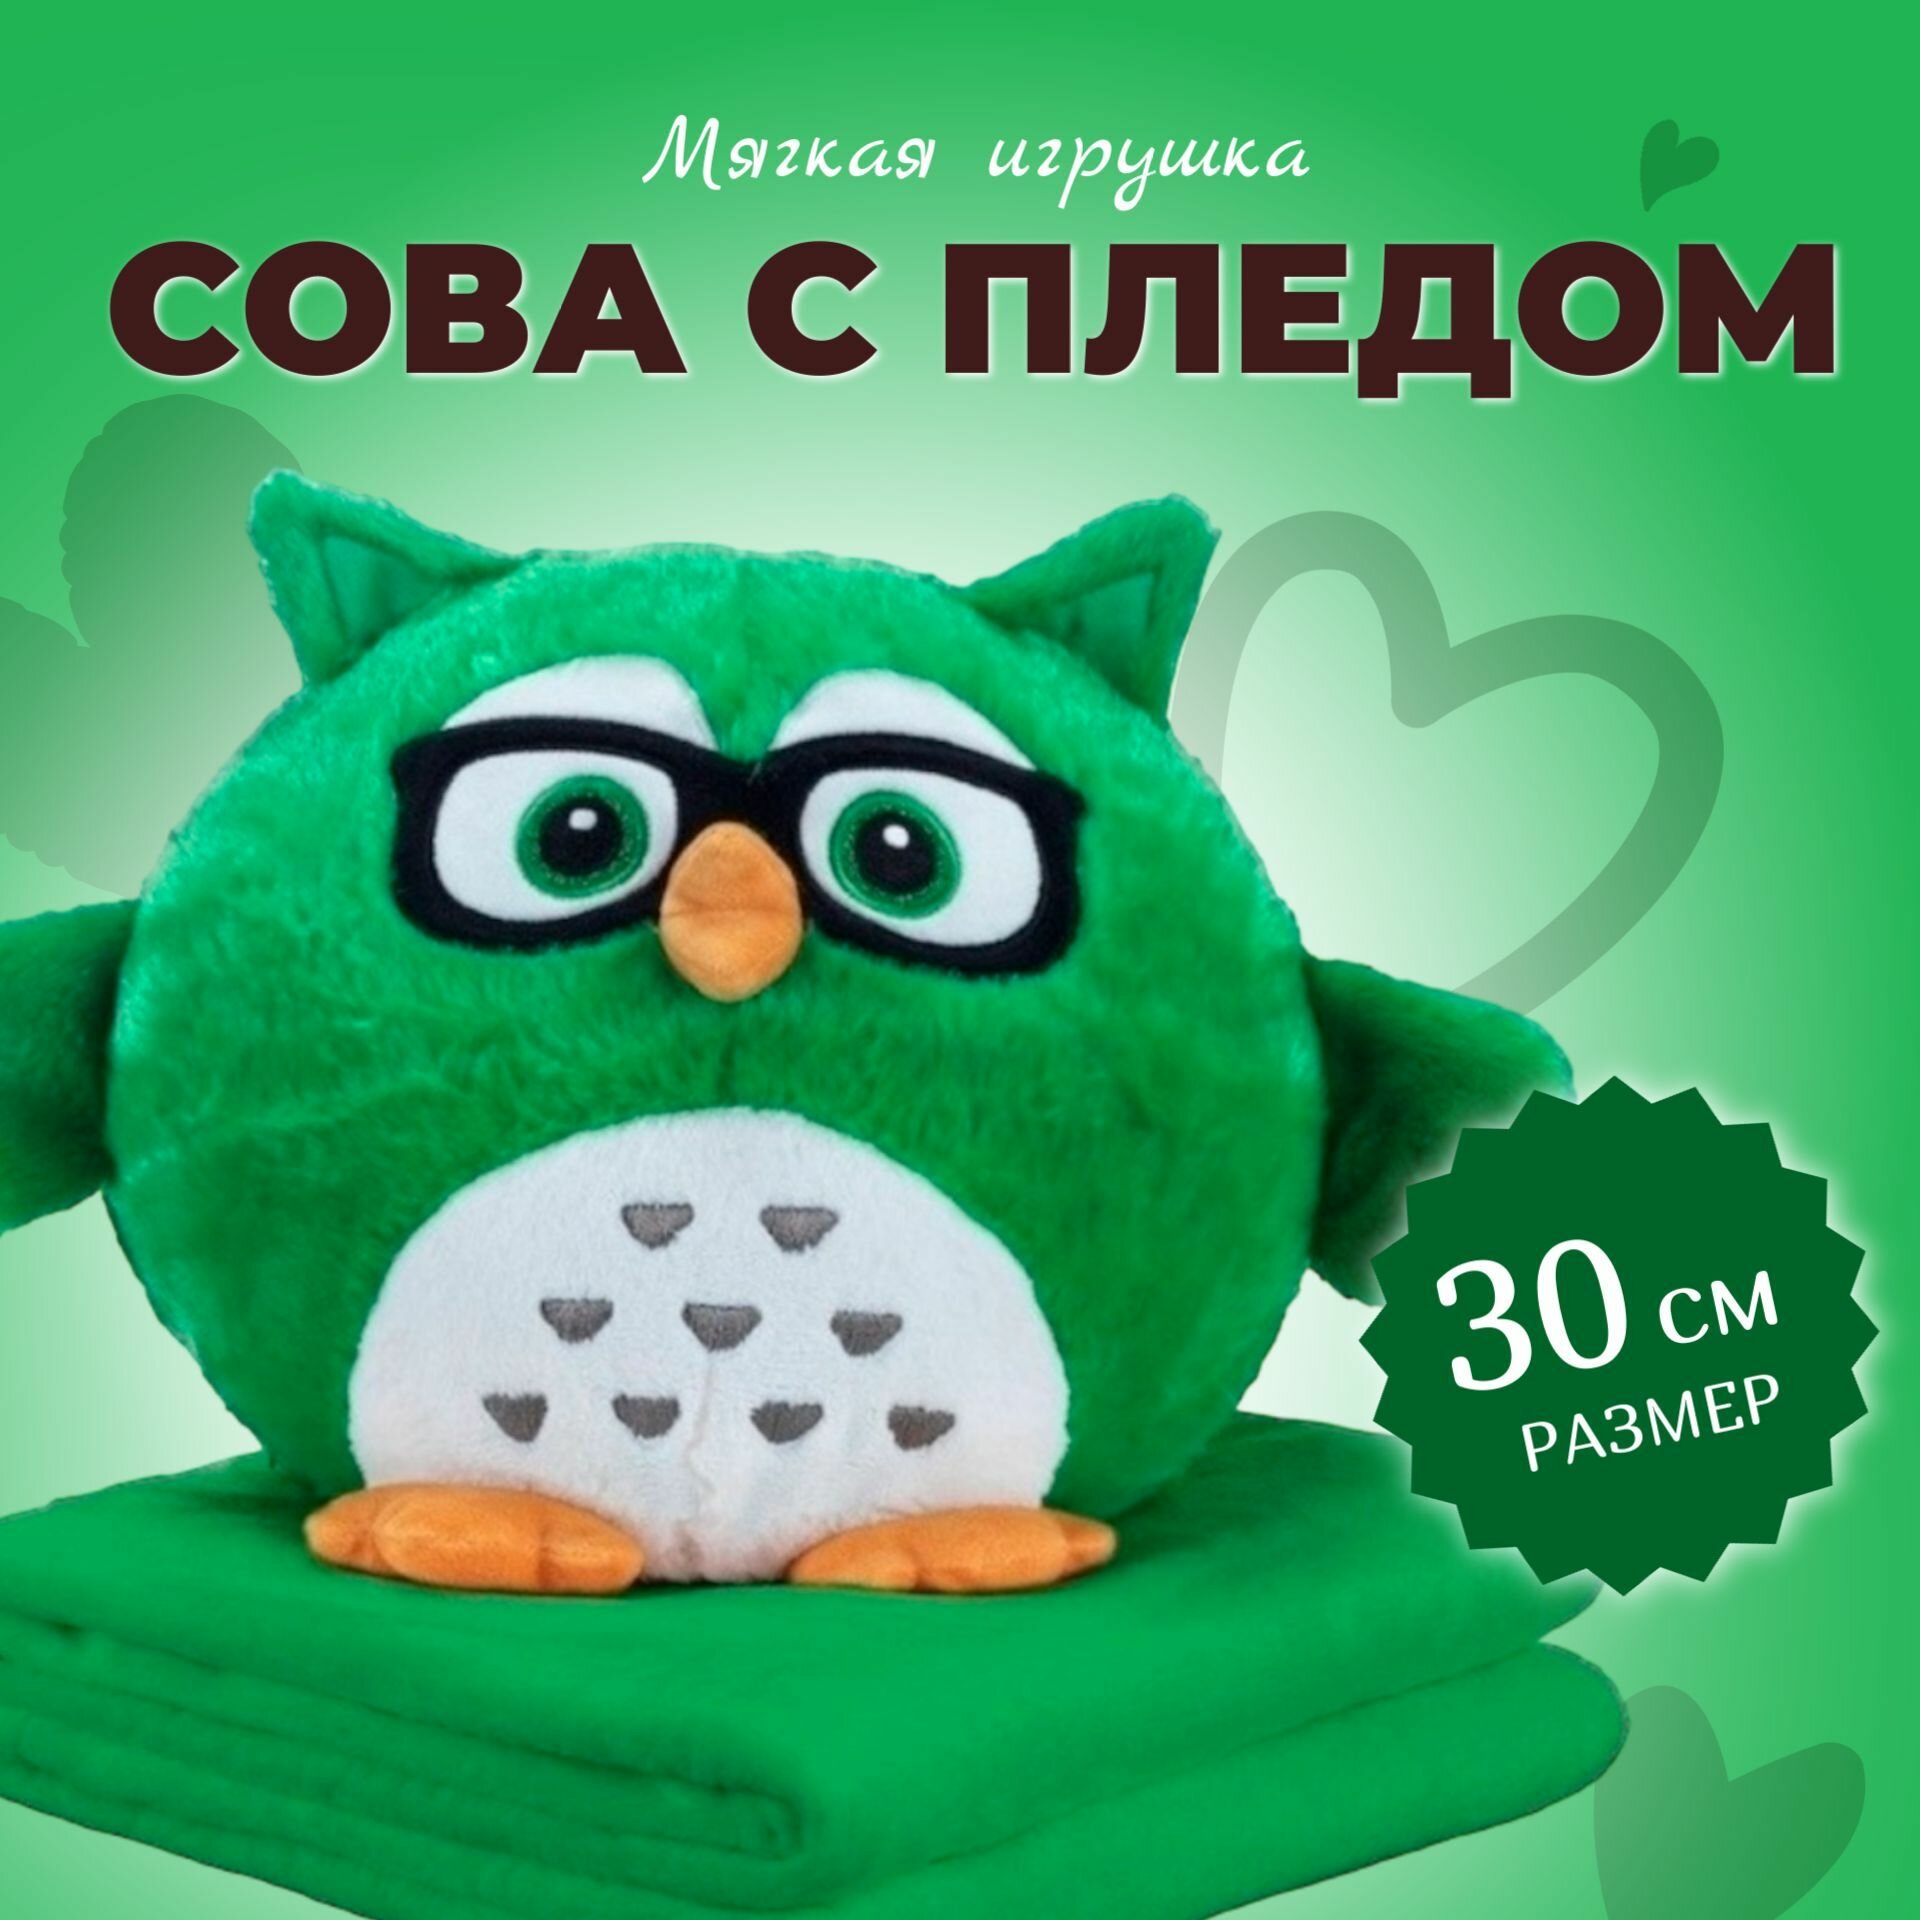 Мягкая Игрушка "Сова с пледом" 30 см / Сова 3 в 1 (подушка, плед, игрушка-антистресс), зелёная